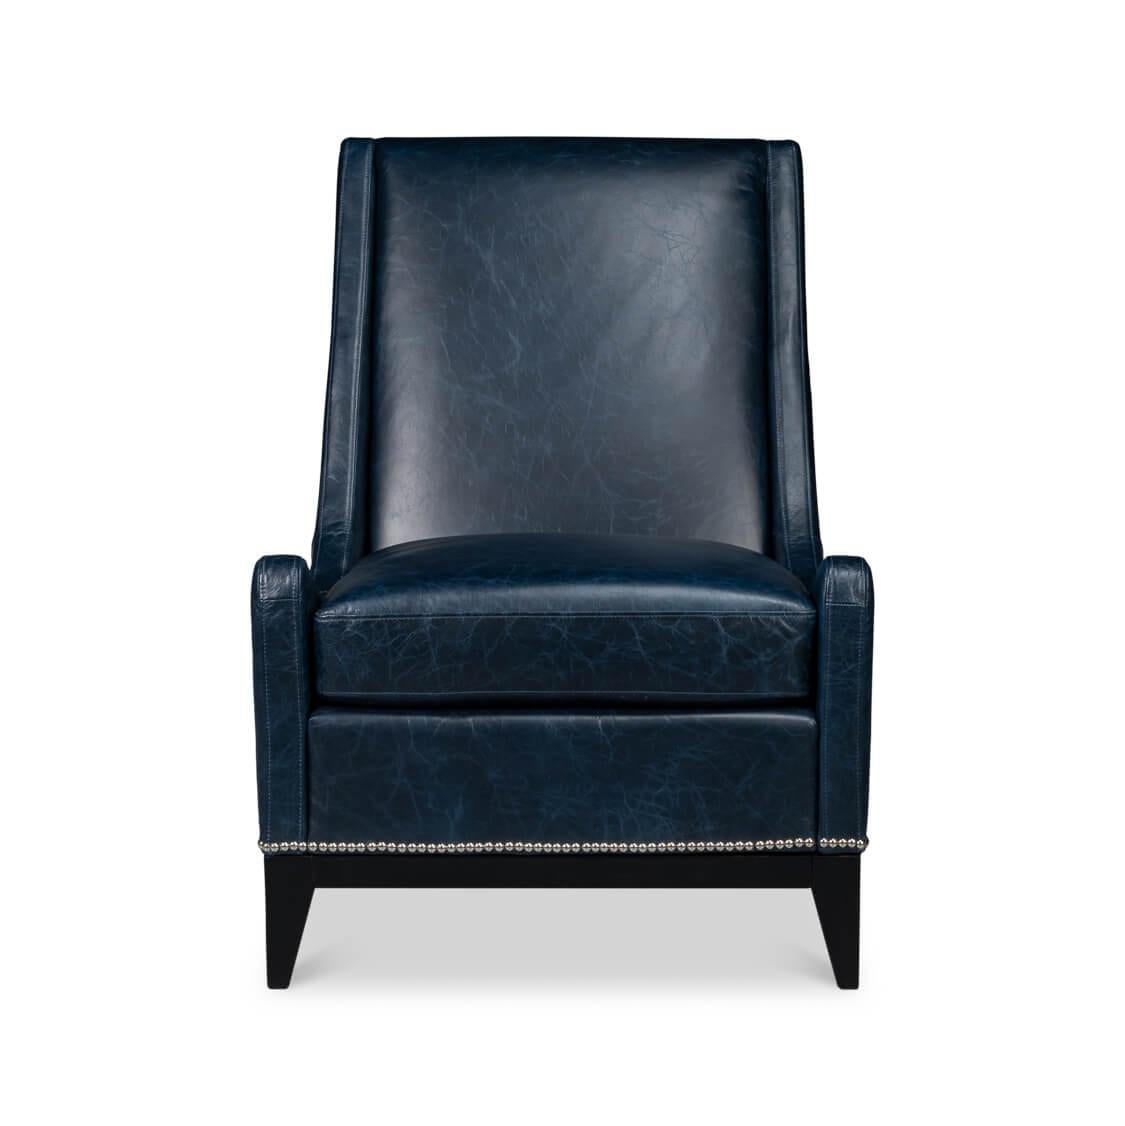 Dieser mit viel Liebe zum Detail gefertigte Sessel ist aus geschmeidigem, hochwertigem Leder gefertigt und lädt zum Sitzen und Entspannen ein. Das kräftige Chateau Blue-Leder wird durch die klassische Nagelkopfverzierung wunderbar ergänzt und